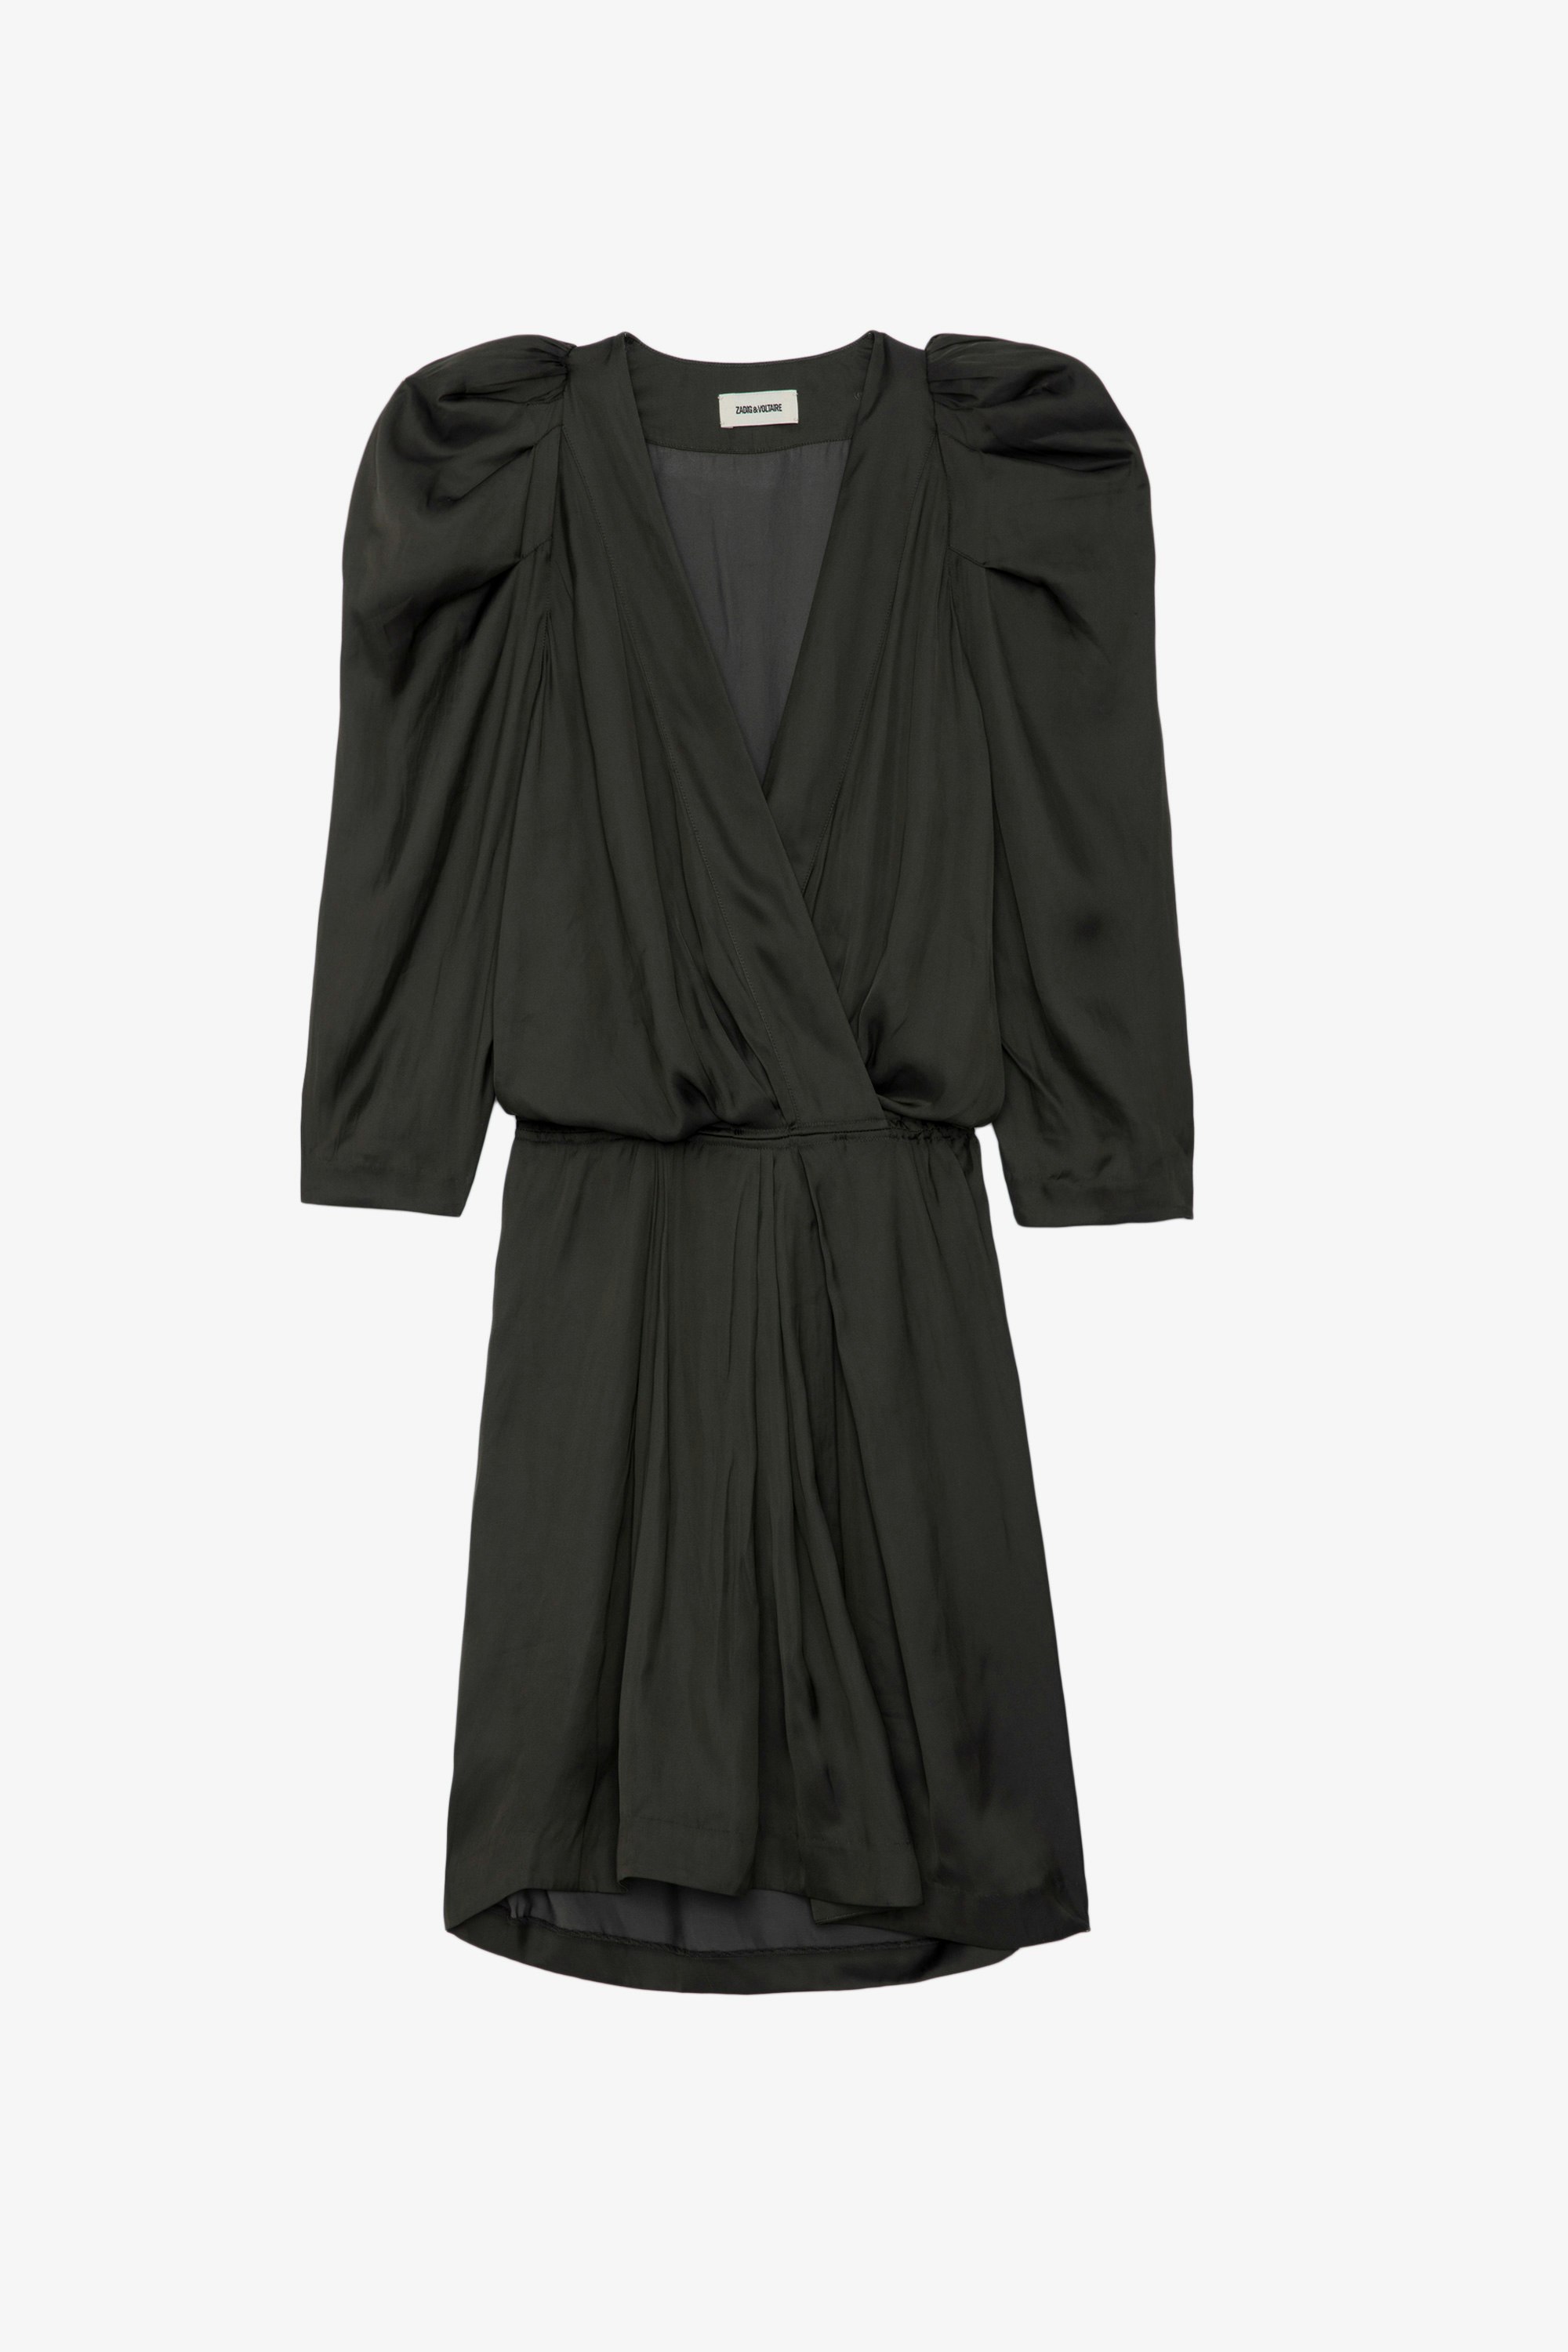 Kleid Ruz Satin - Kurzes, schwarzes Satinkleid mit 3/4-Ärmeln, elastischer Taille und Raffungen an den Schultern.